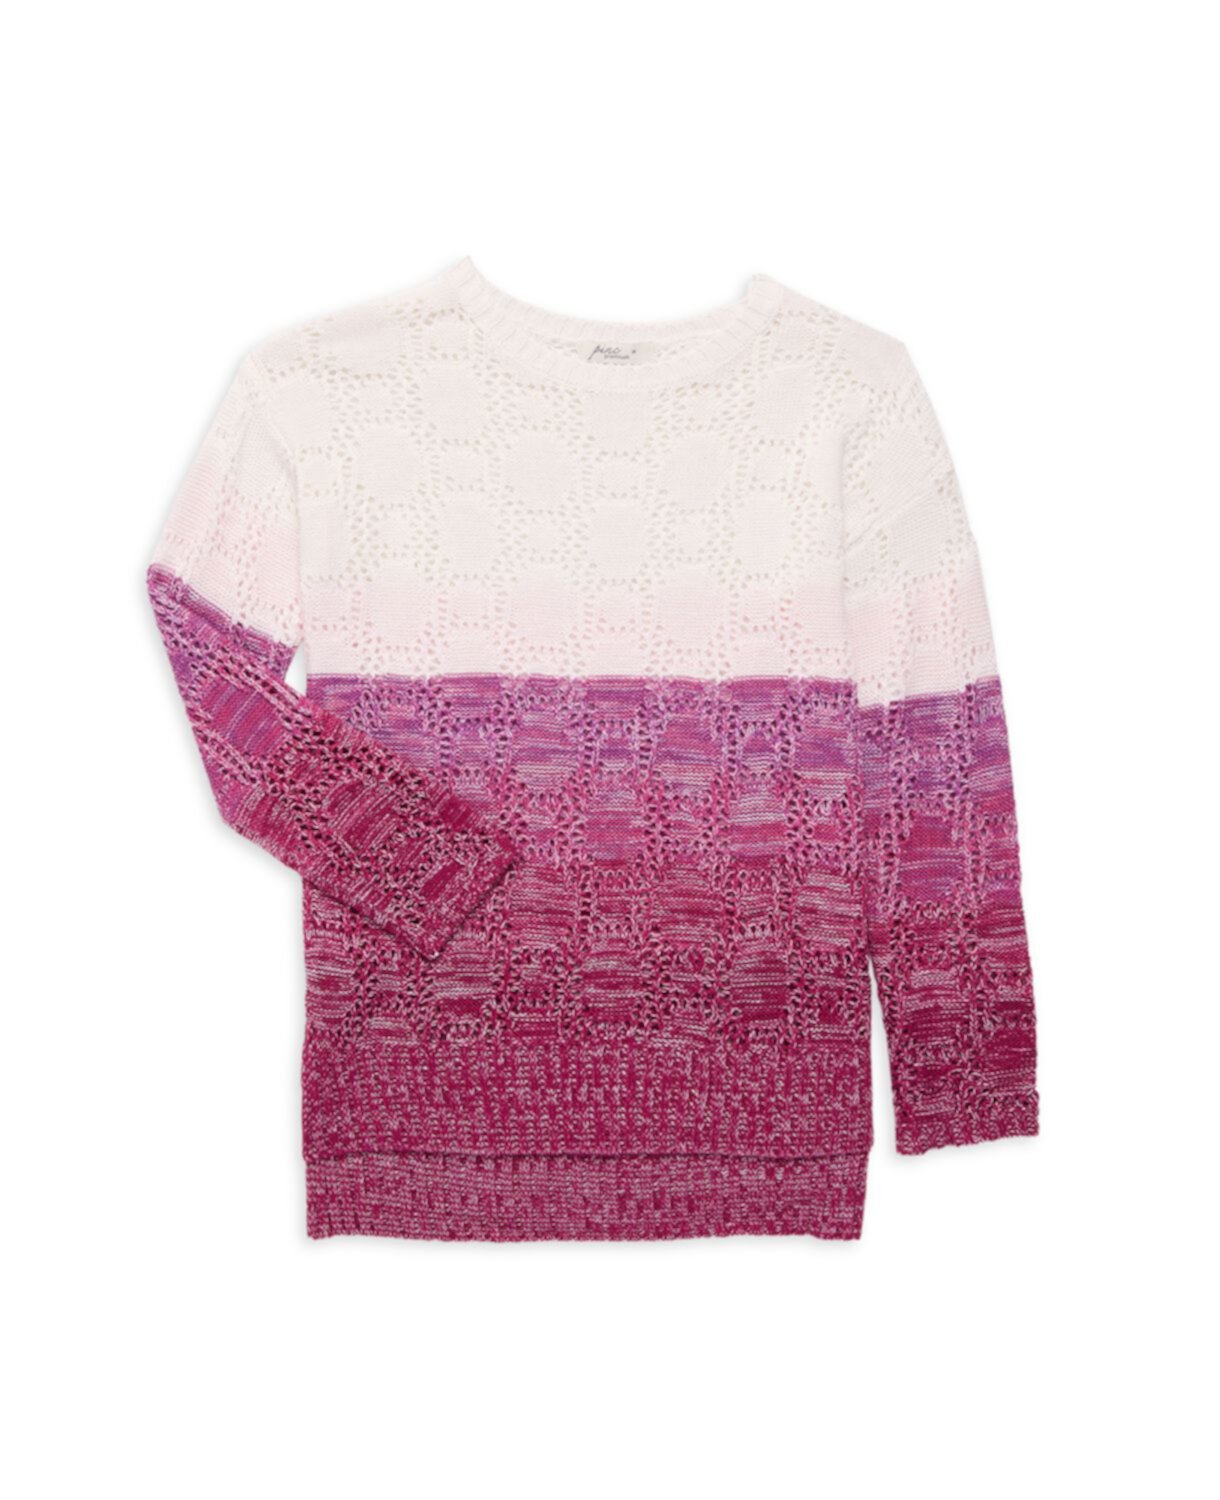 Вязаный свитер с эффектом «омбре» для девочки Pinc Premium